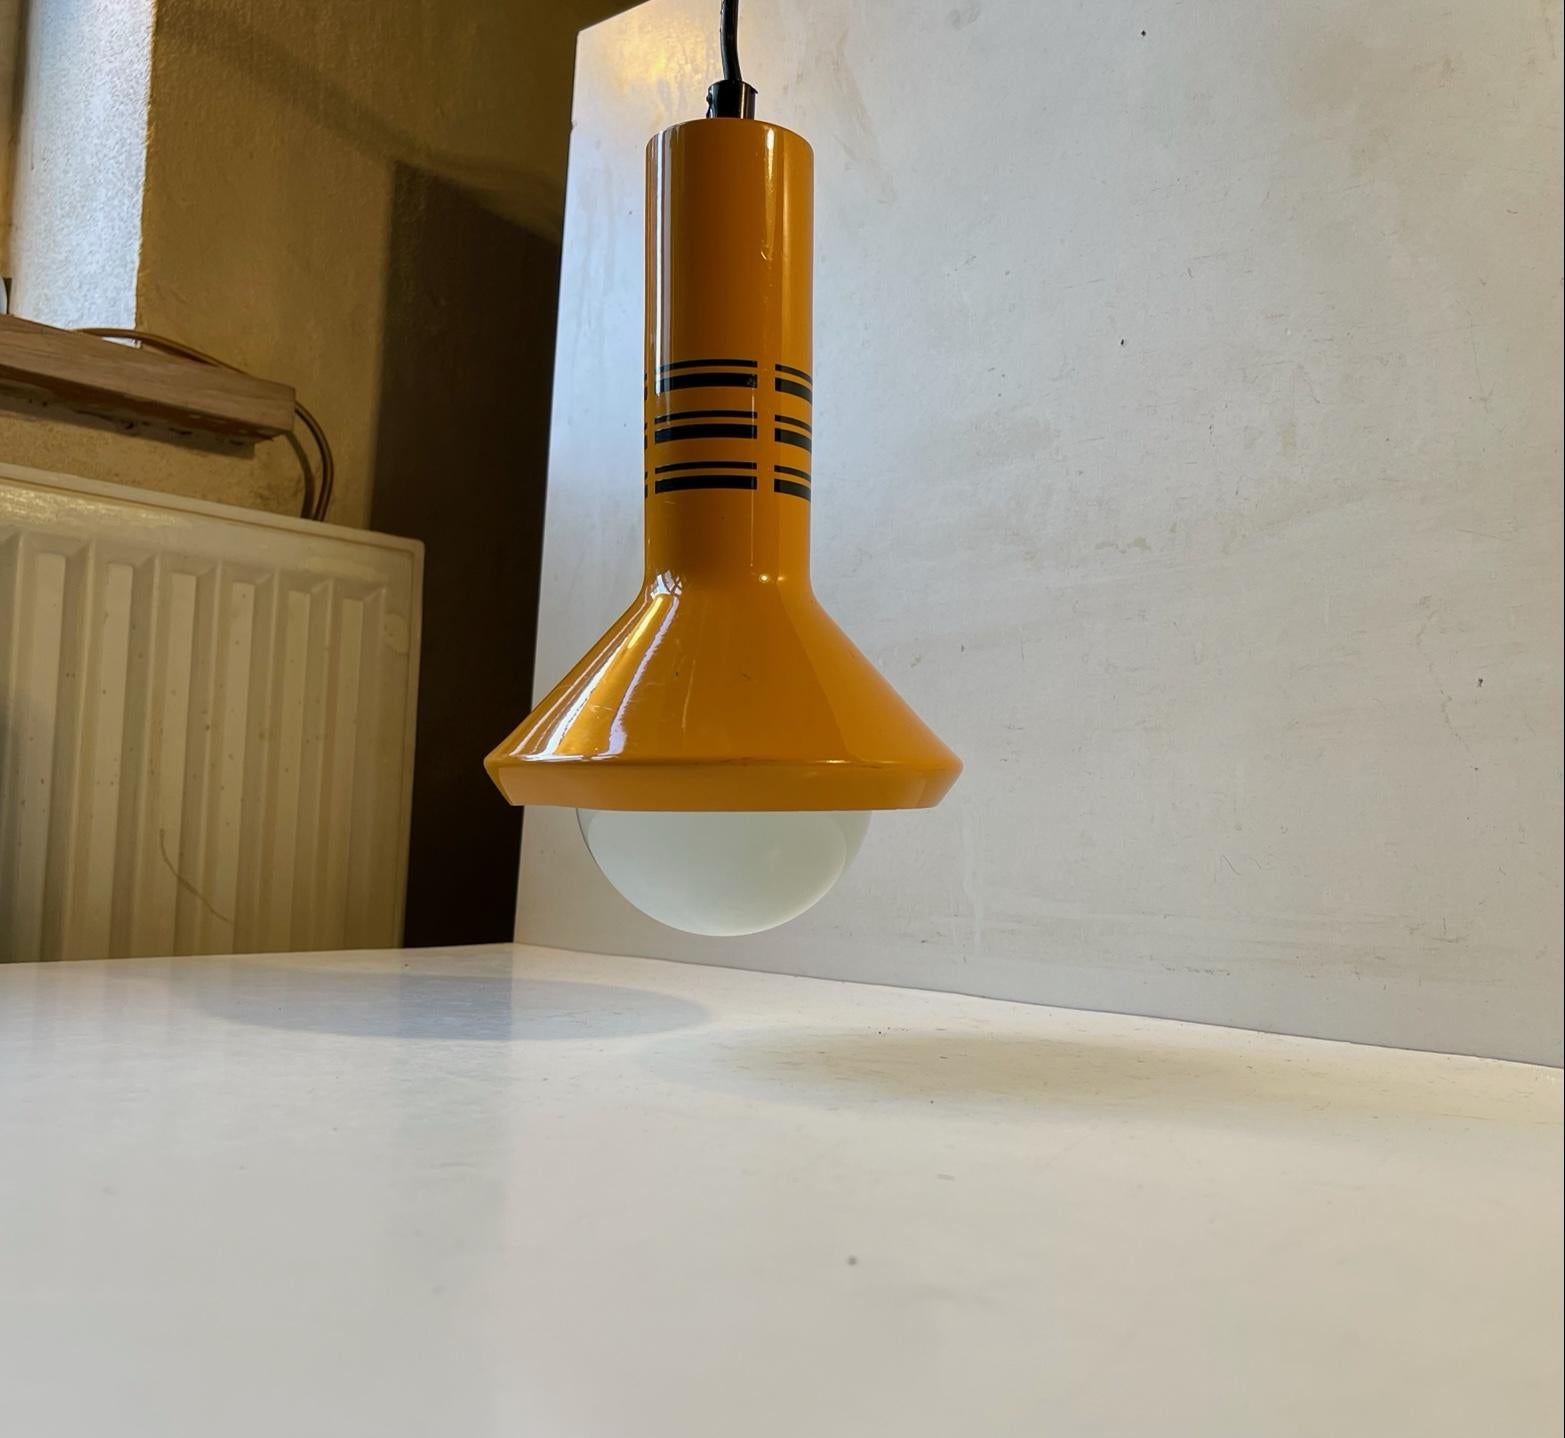 Orangefarbene Aluminium-Pendelleuchte mit schwarzen Grafiken/Streifen. Entworfen und hergestellt von LB Lyskær in Dänemark in den 1970er Jahren. Für die Optik ist sie mit einer weißen Jumbo-Glühbirne bestückt, die im Verkauf enthalten ist. Diese